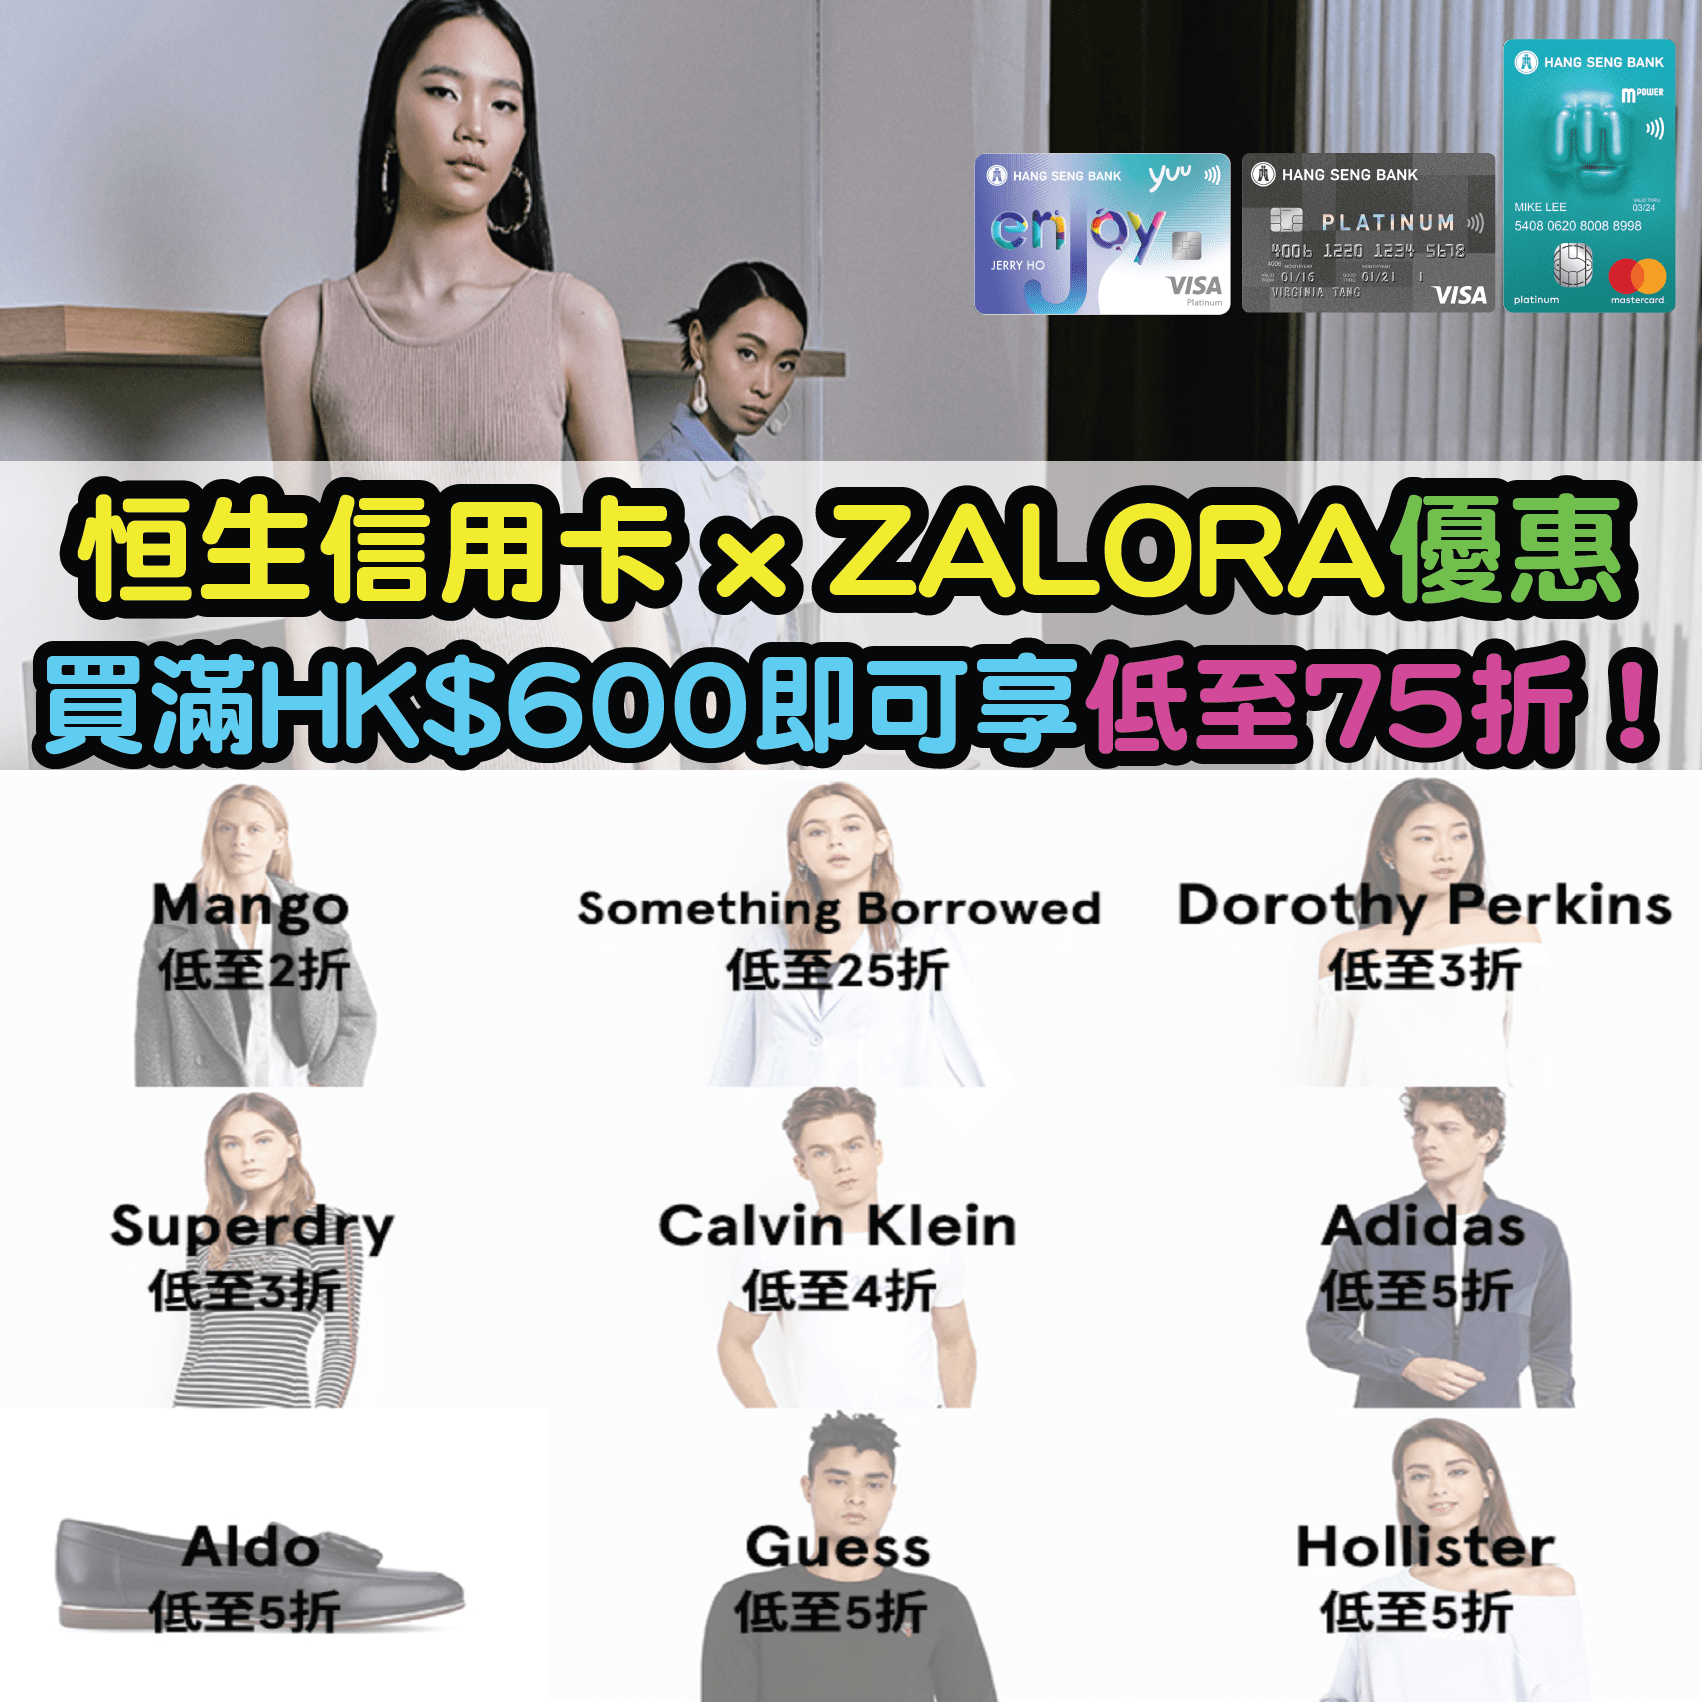 【恒生信用卡ZALORA低至75折優惠】憑恒生信用卡買滿HK$600即可享低至75折優惠！Adidas、Hollister、Superdry、Calvin Klein 等品牌都有折！